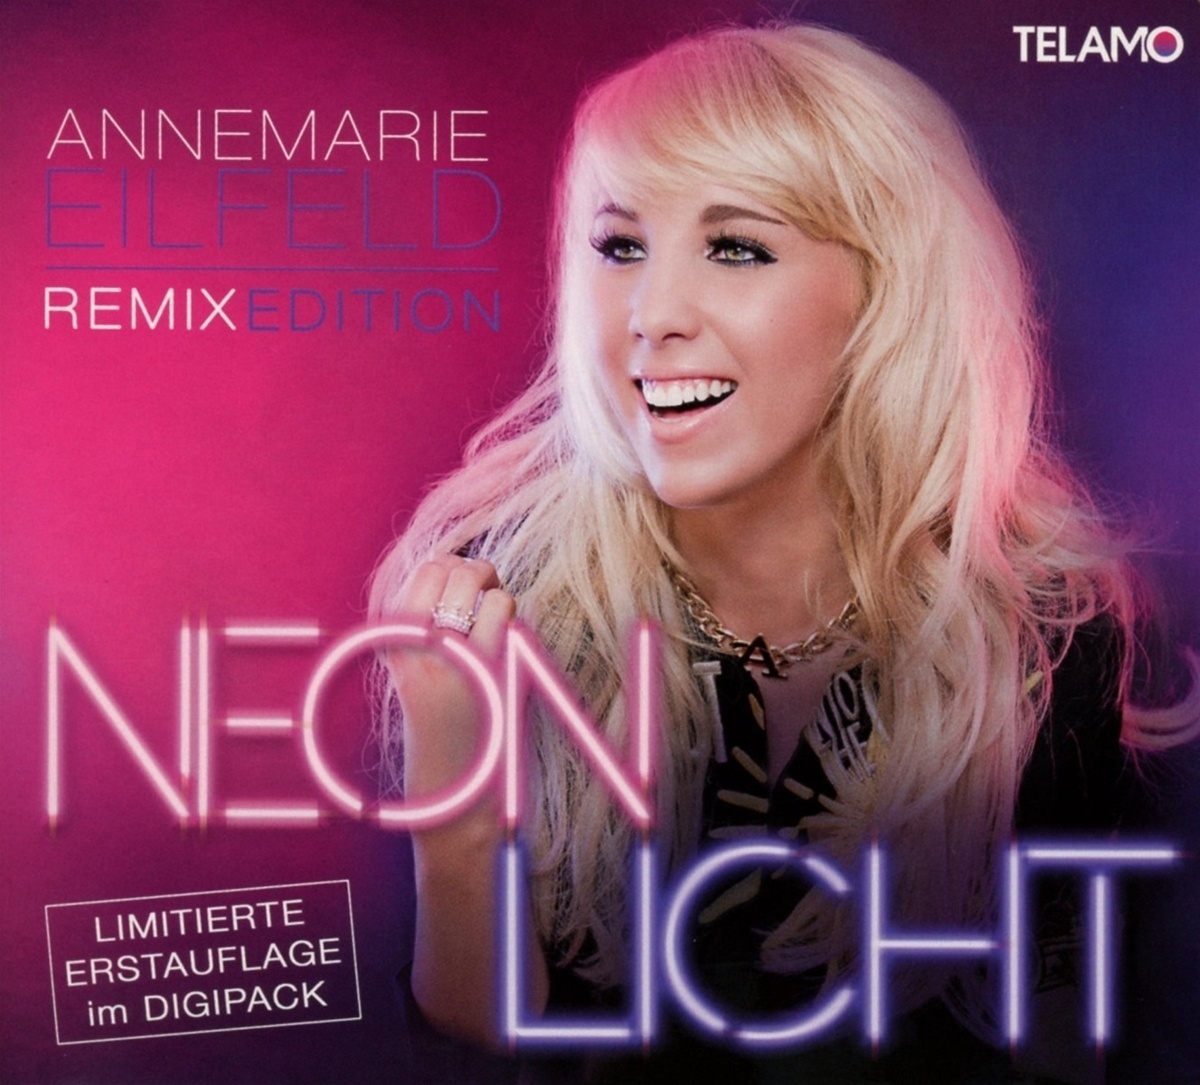 Neonlicht (Remix Edition) - Annemarie Eilfeld. (CD)